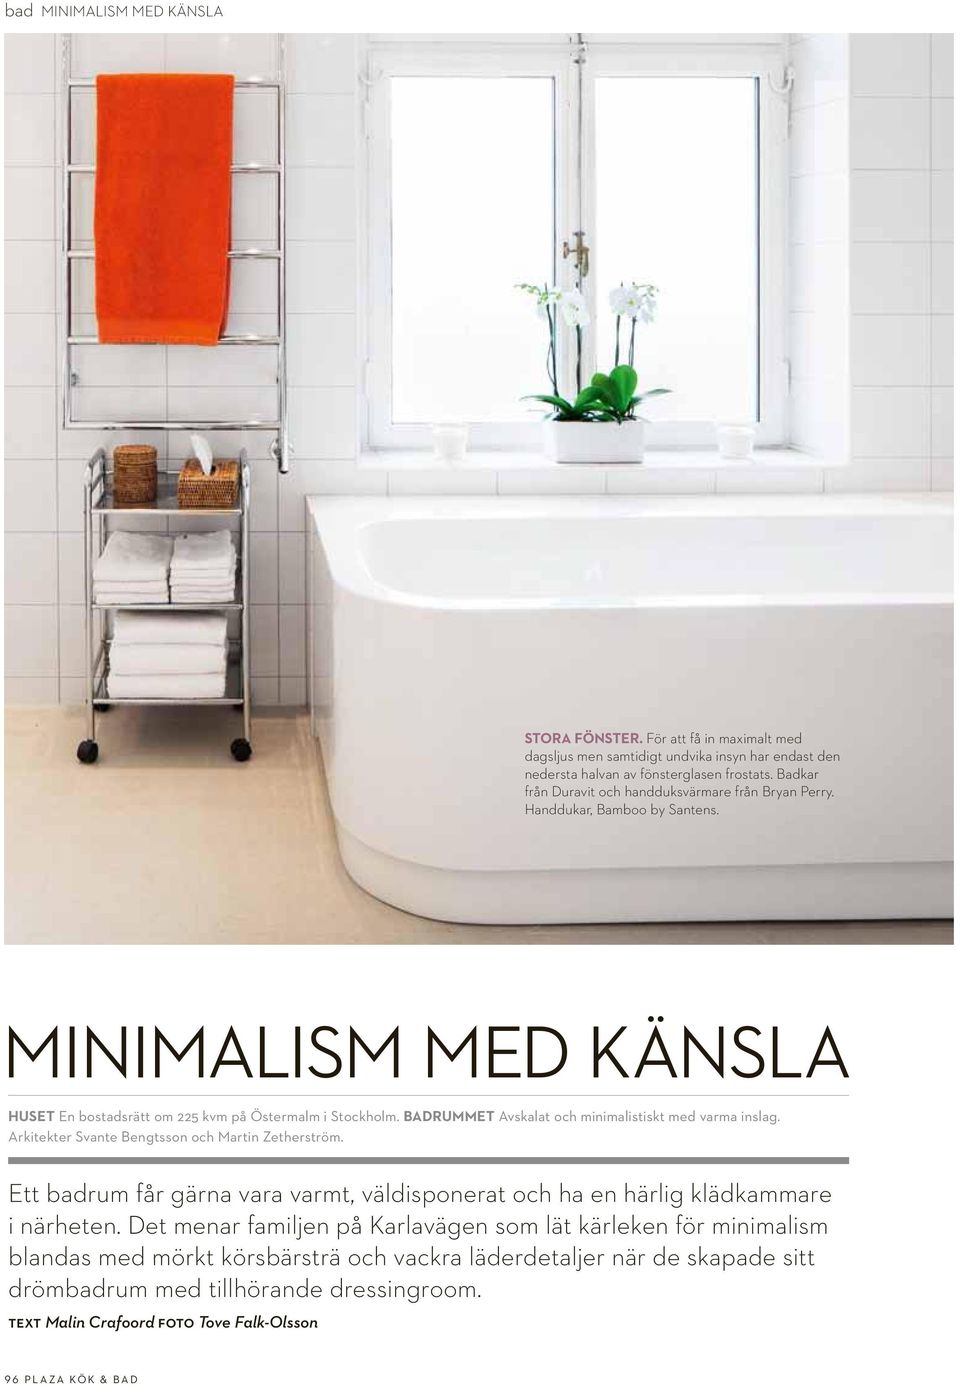 BADRUMMET Avskalat och minimalistiskt med varma inslag. Arkitekter Svante Bengtsson och Martin Zetherström.